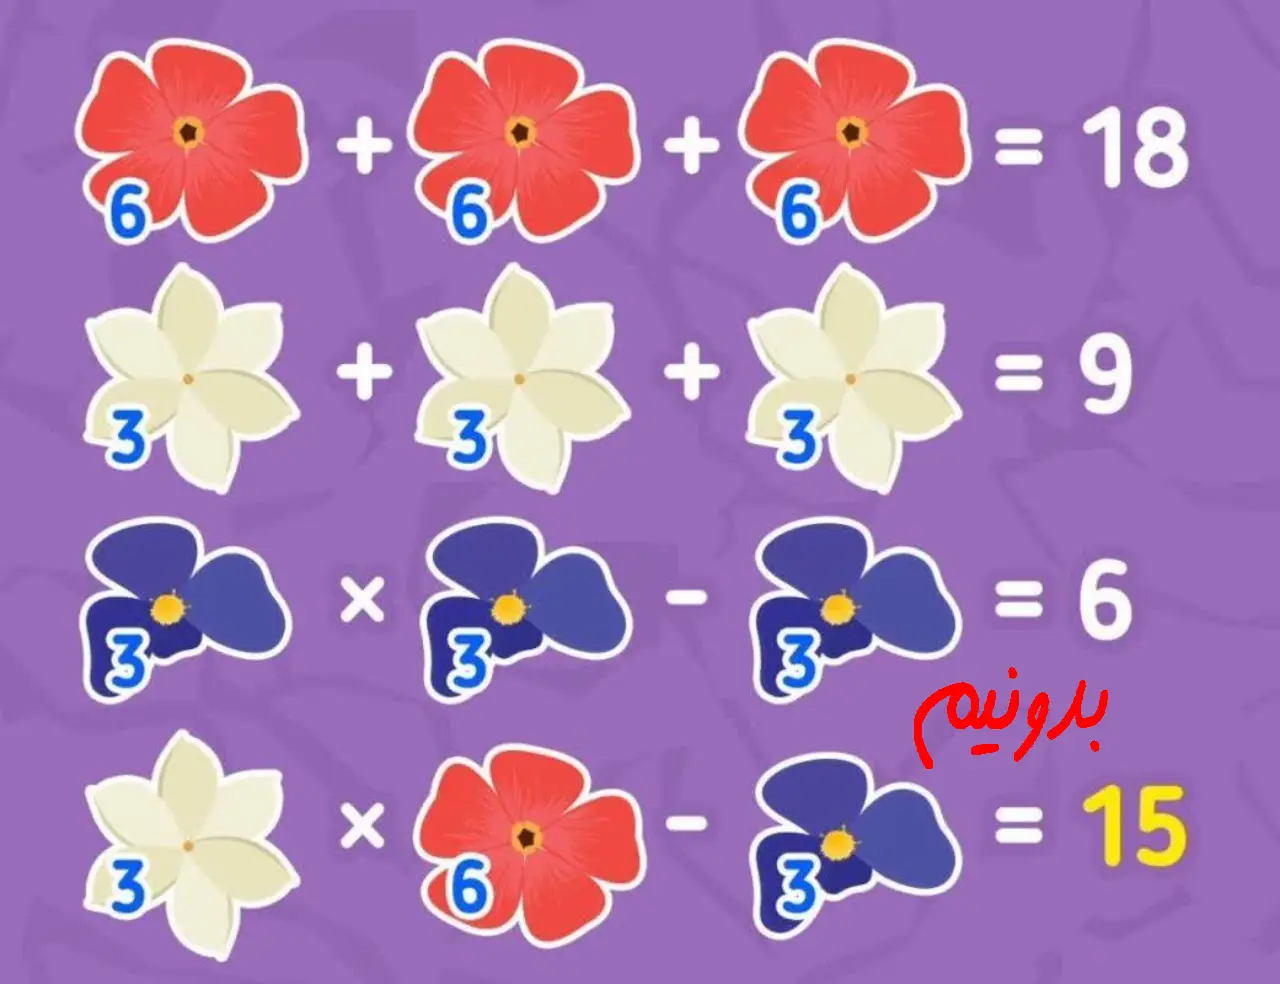 پاسخ معمای ریاضی جمع گلها